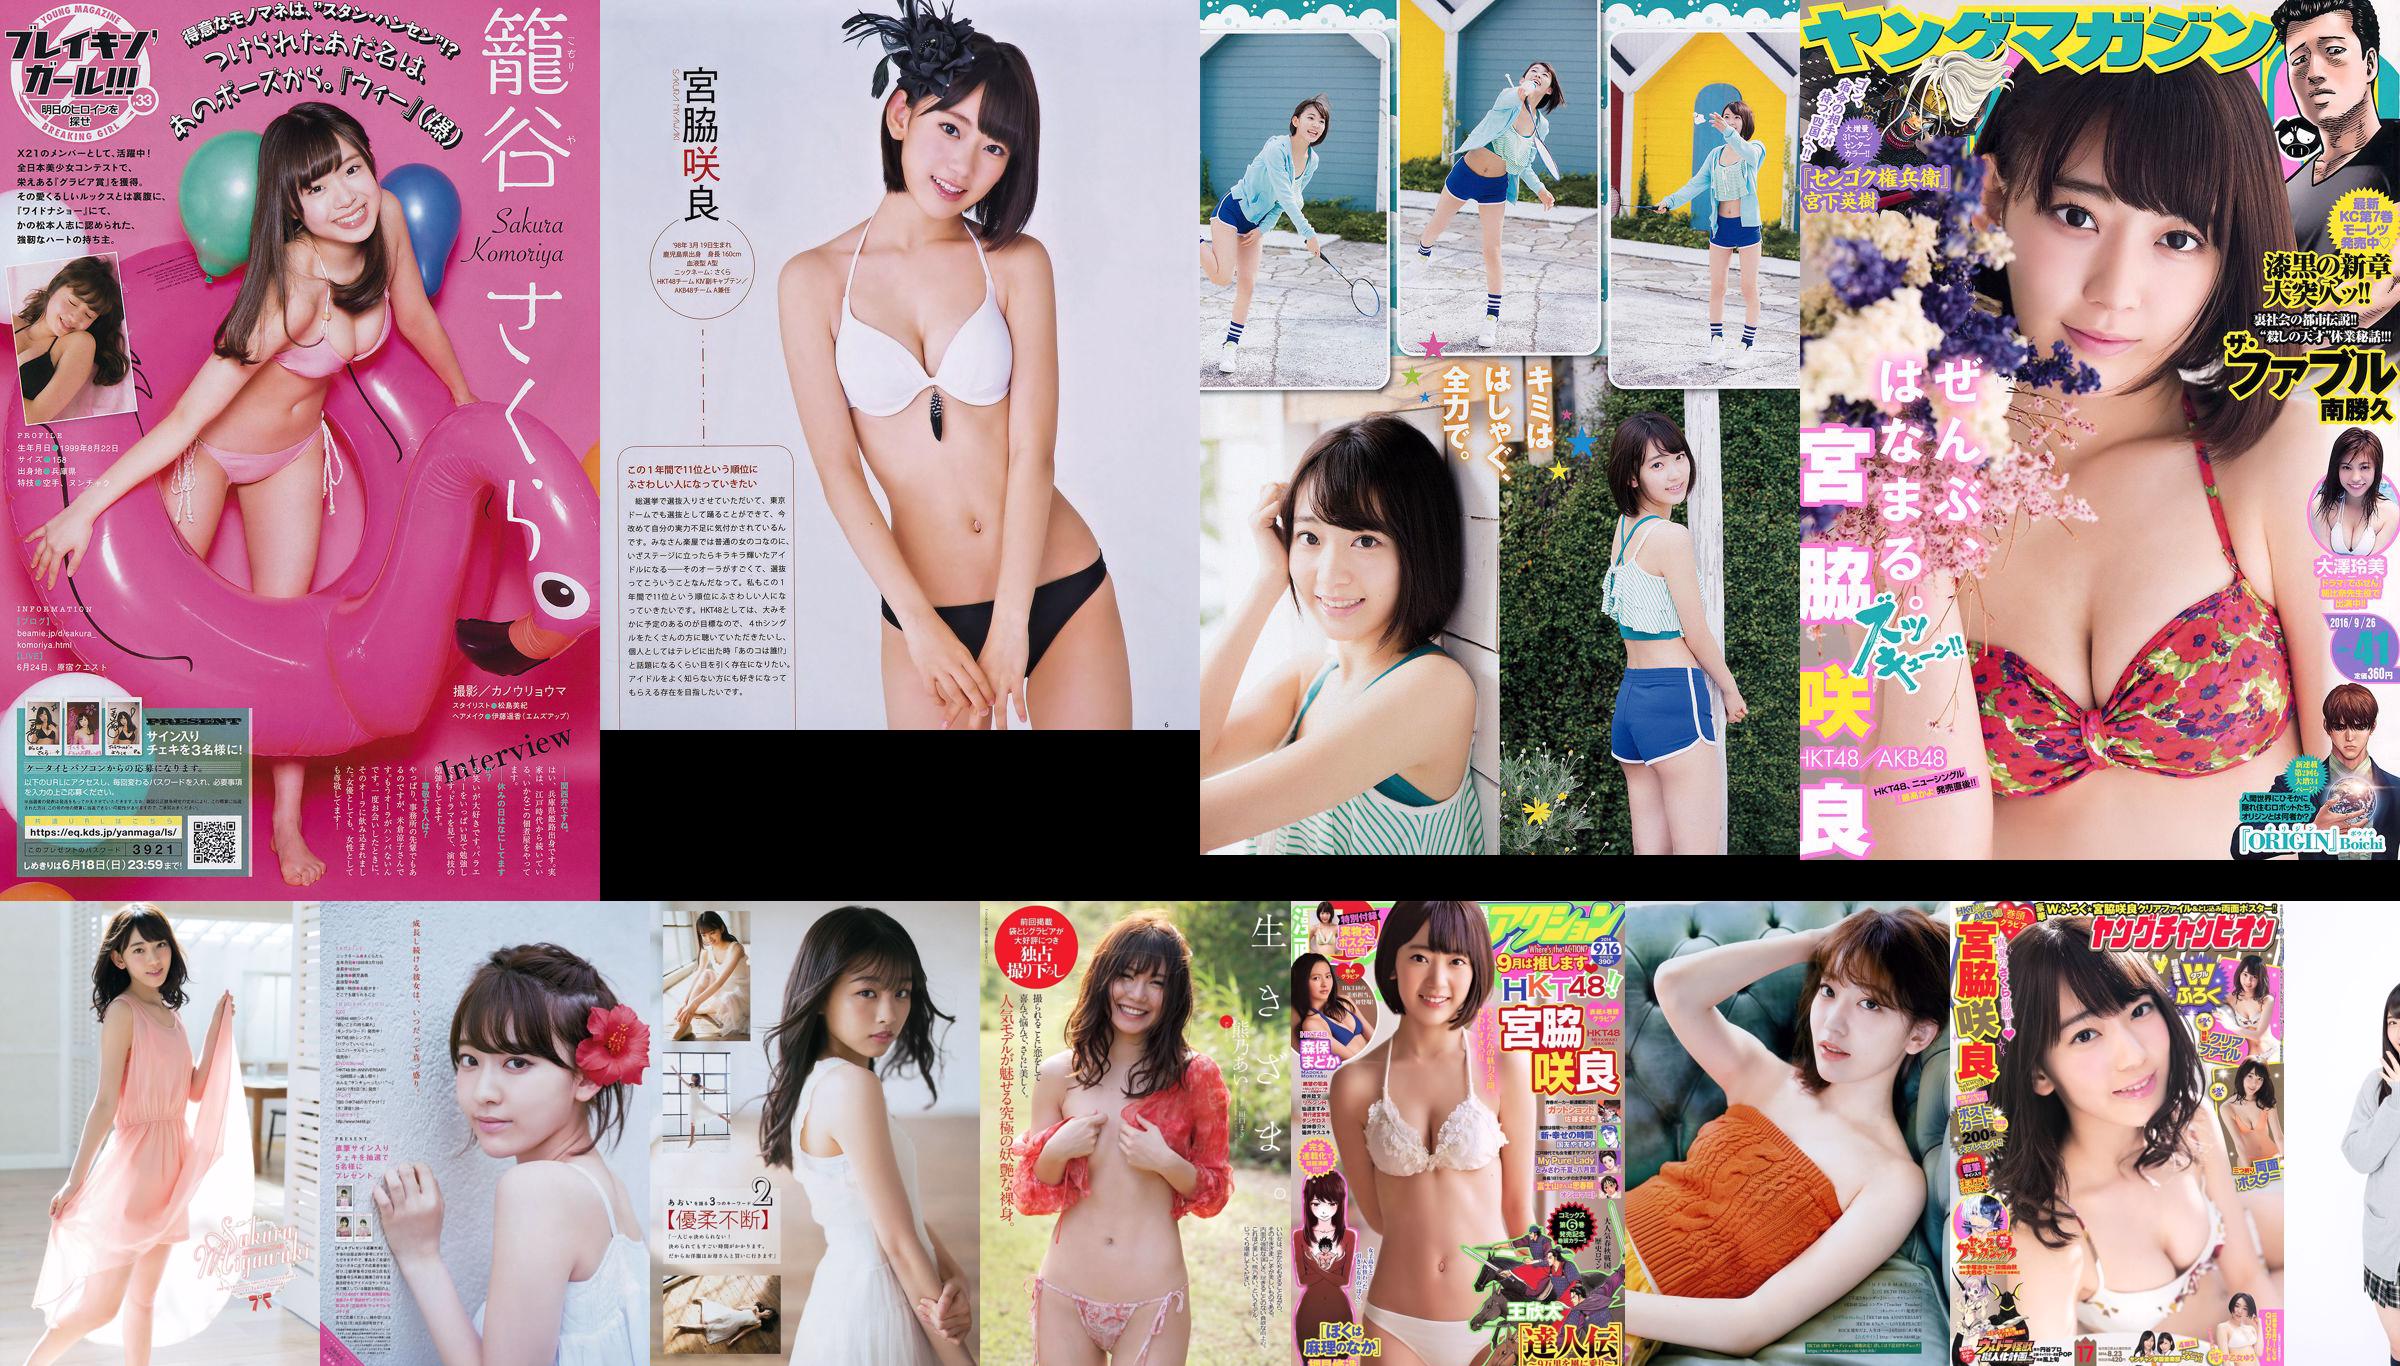 Miyawaki Sakura, Kodama Haruka, Asacho Mi Sakura, Matsuoka Nasaki, Anai Chihiro [Animal joven] 2015 No.10 Photo Magazine No.50dfe2 Página 8